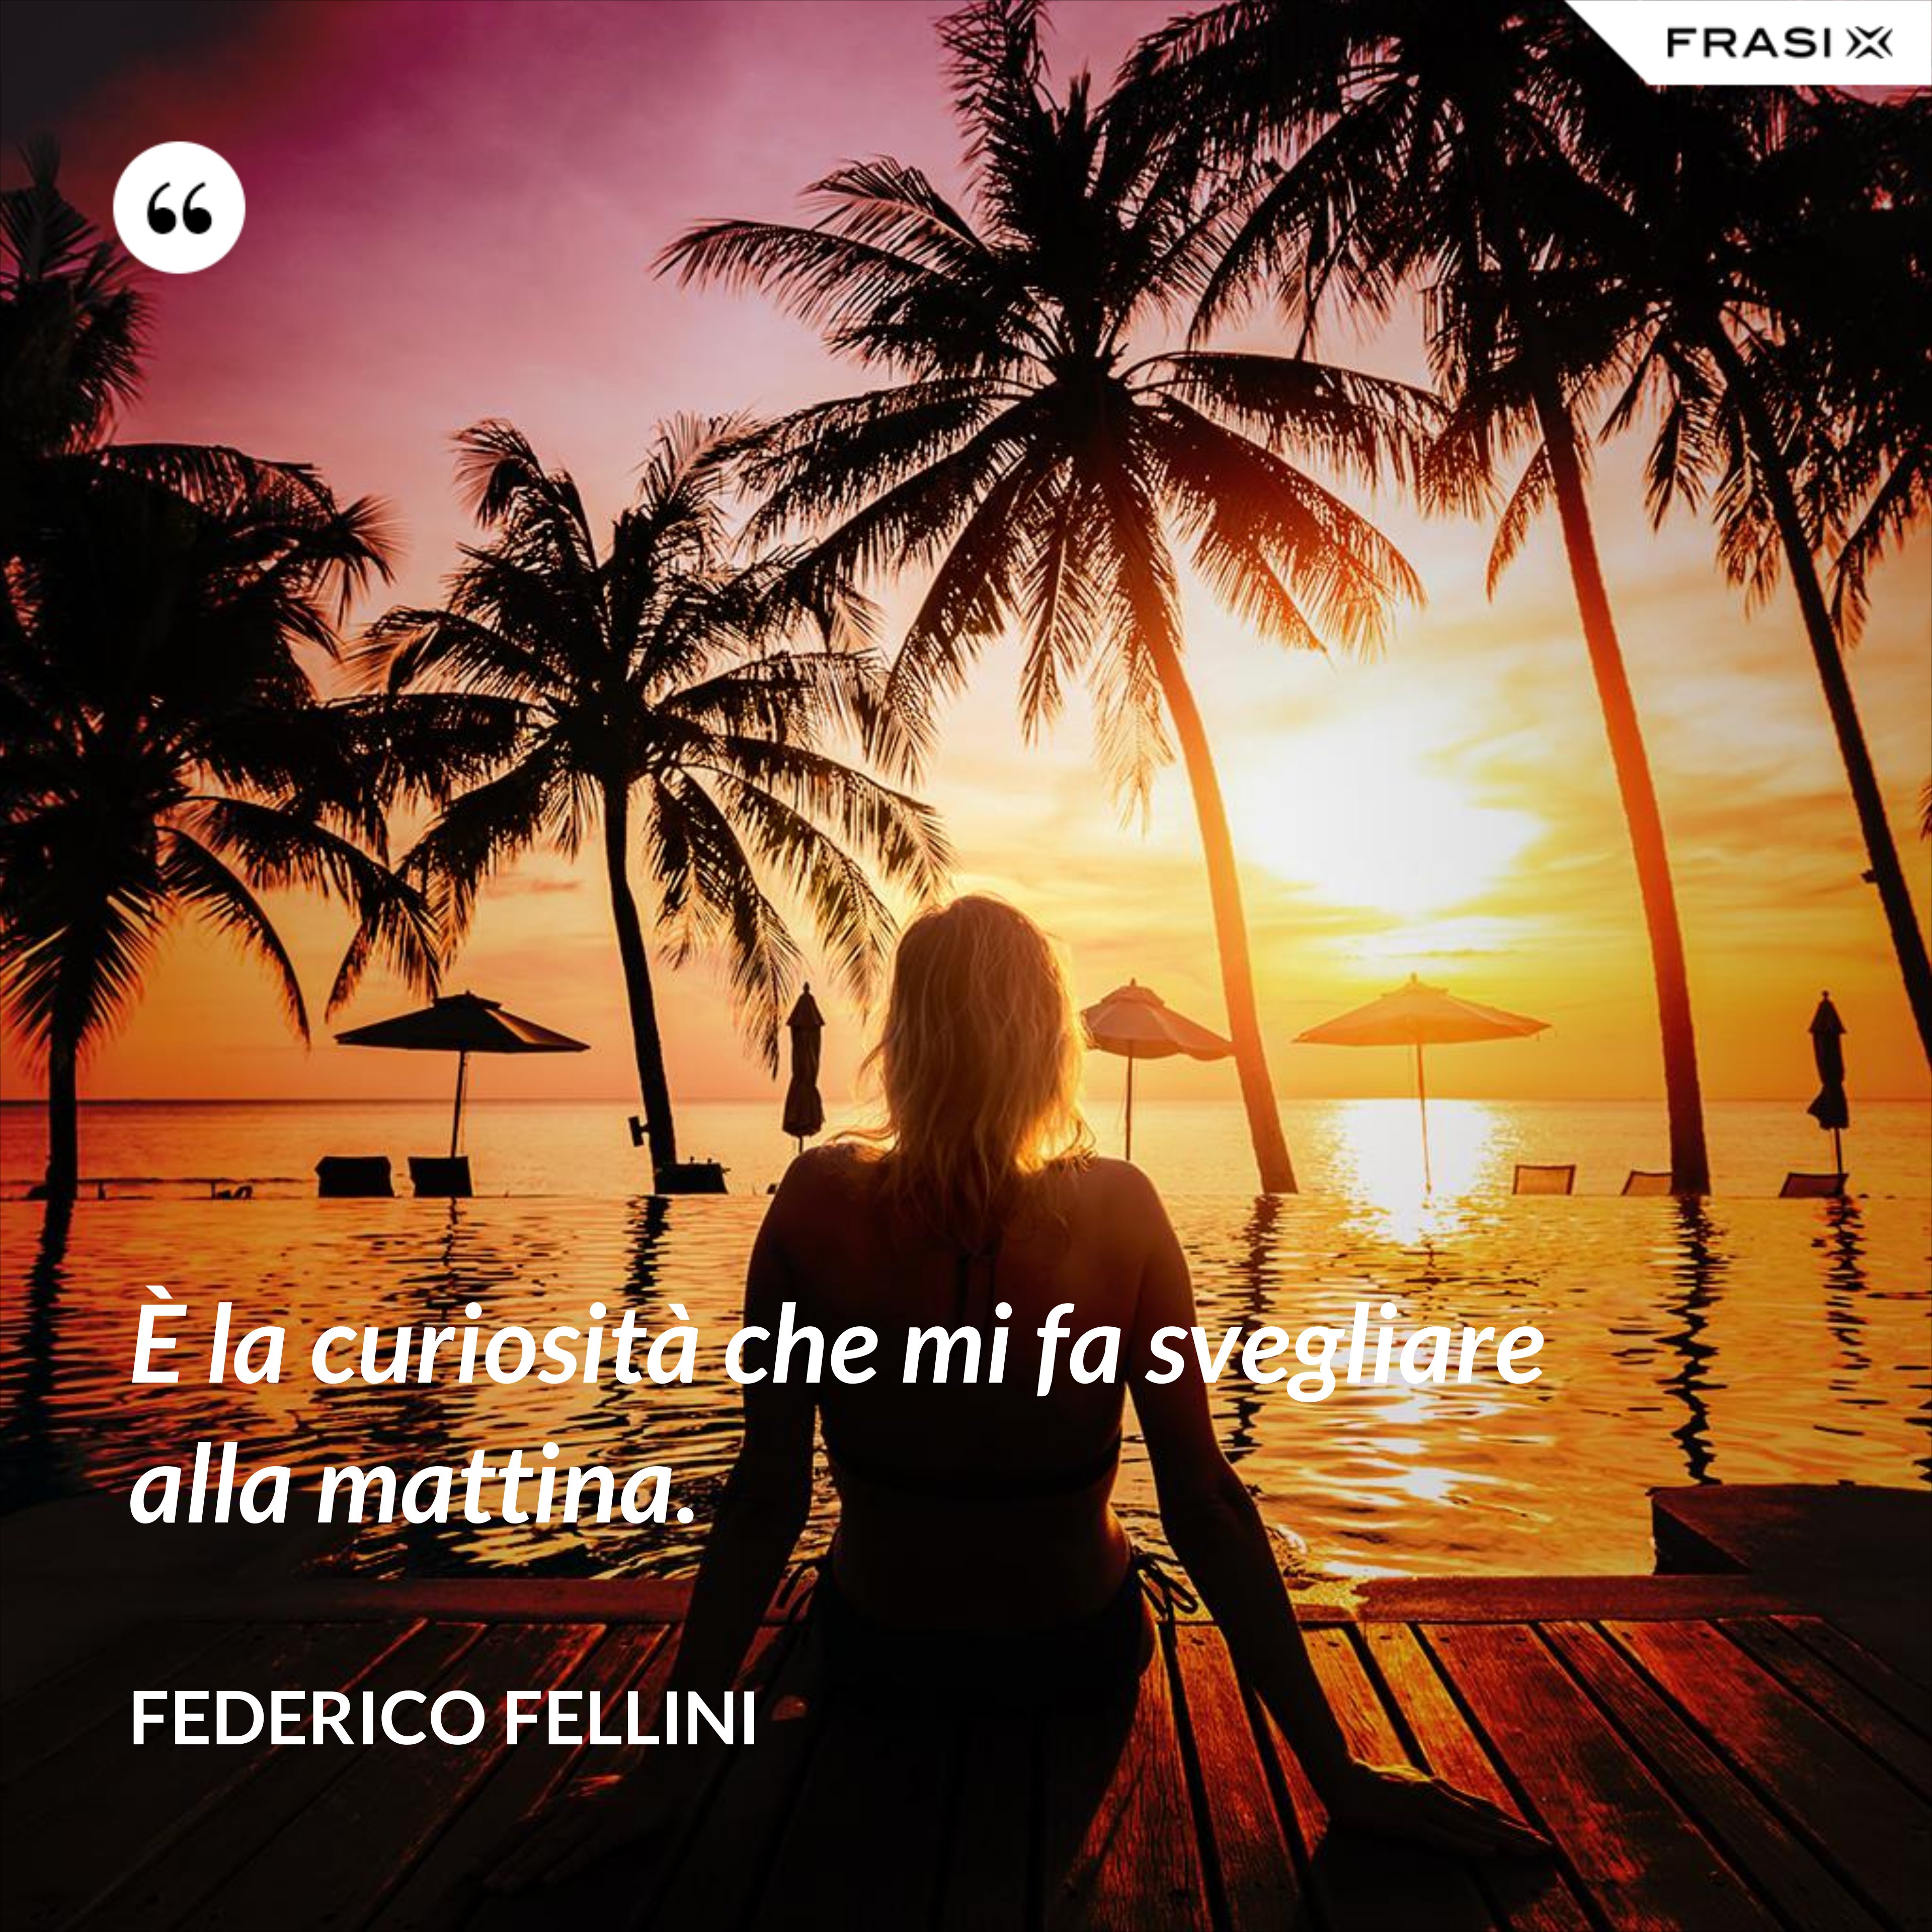 È la curiosità che mi fa svegliare alla mattina. - Federico Fellini